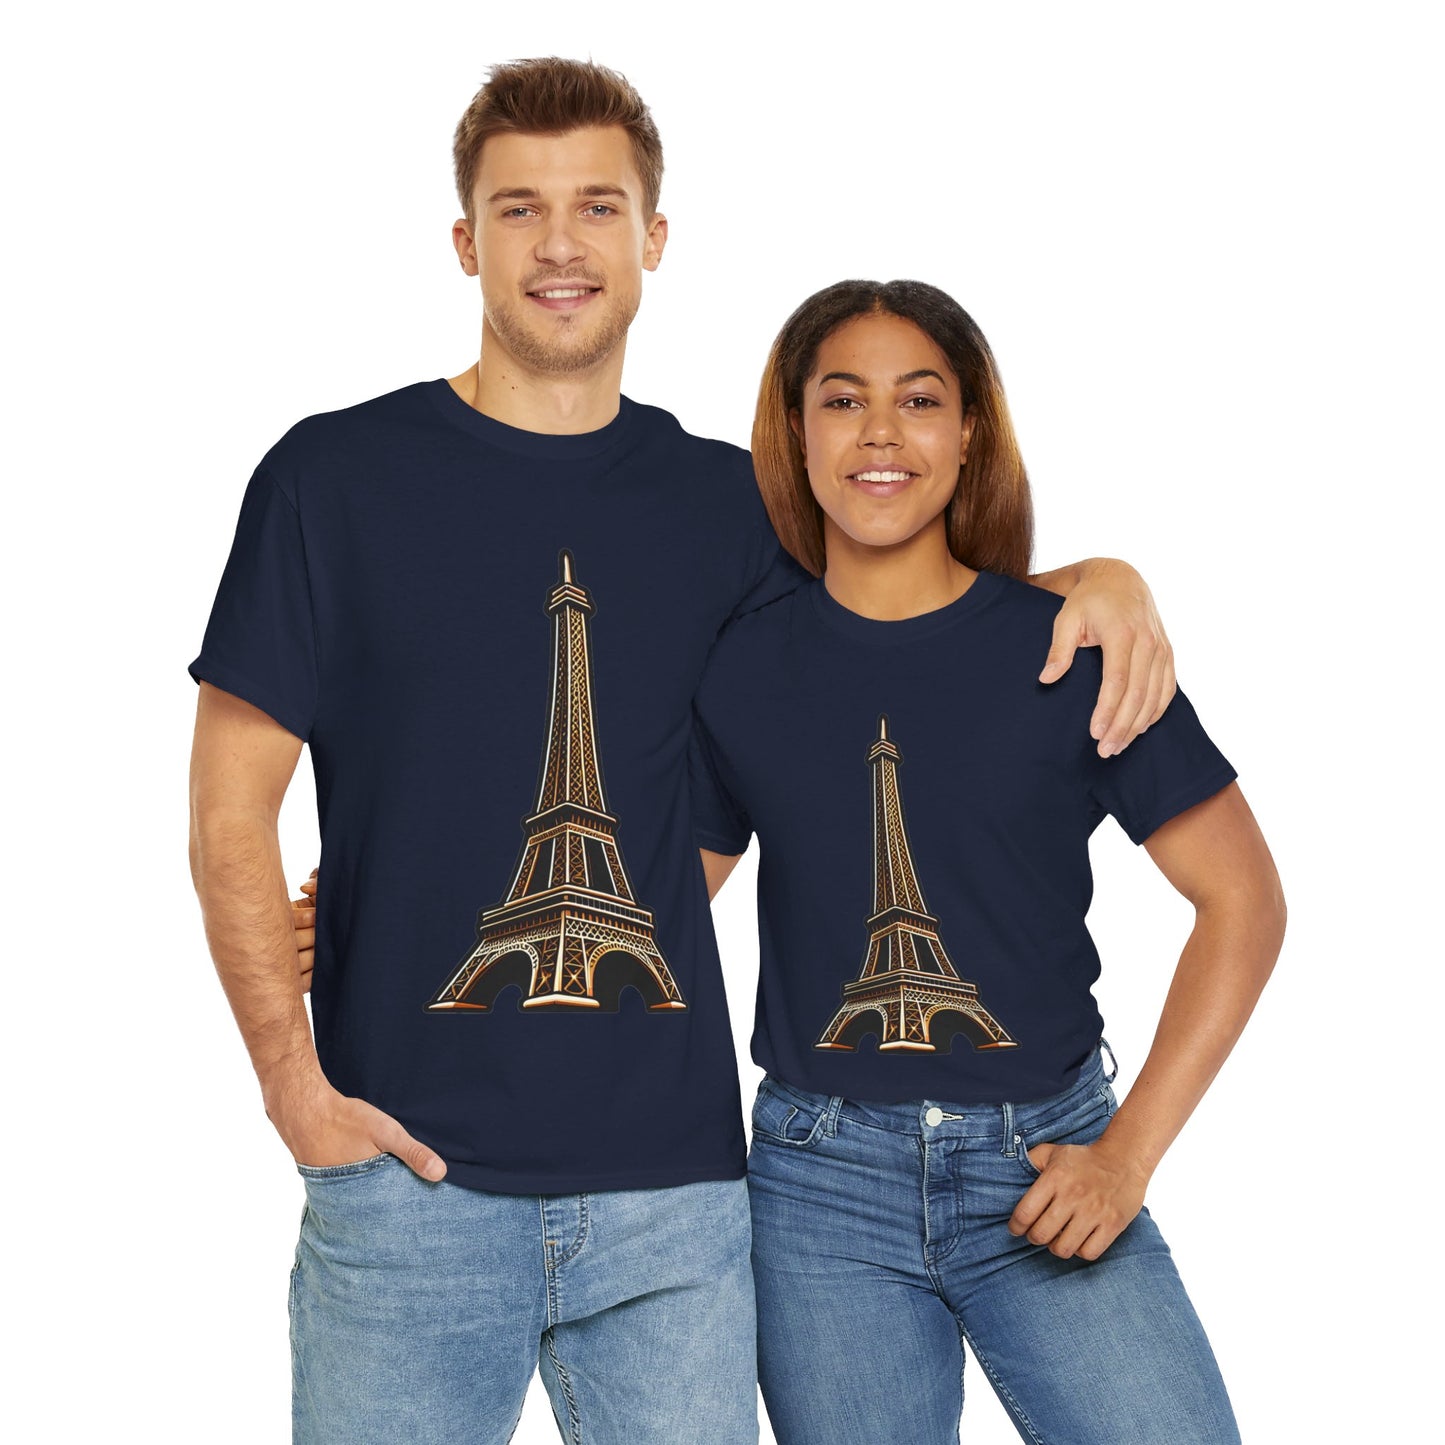 The Eiffel Tower Unisex Heavy Cotton Tee